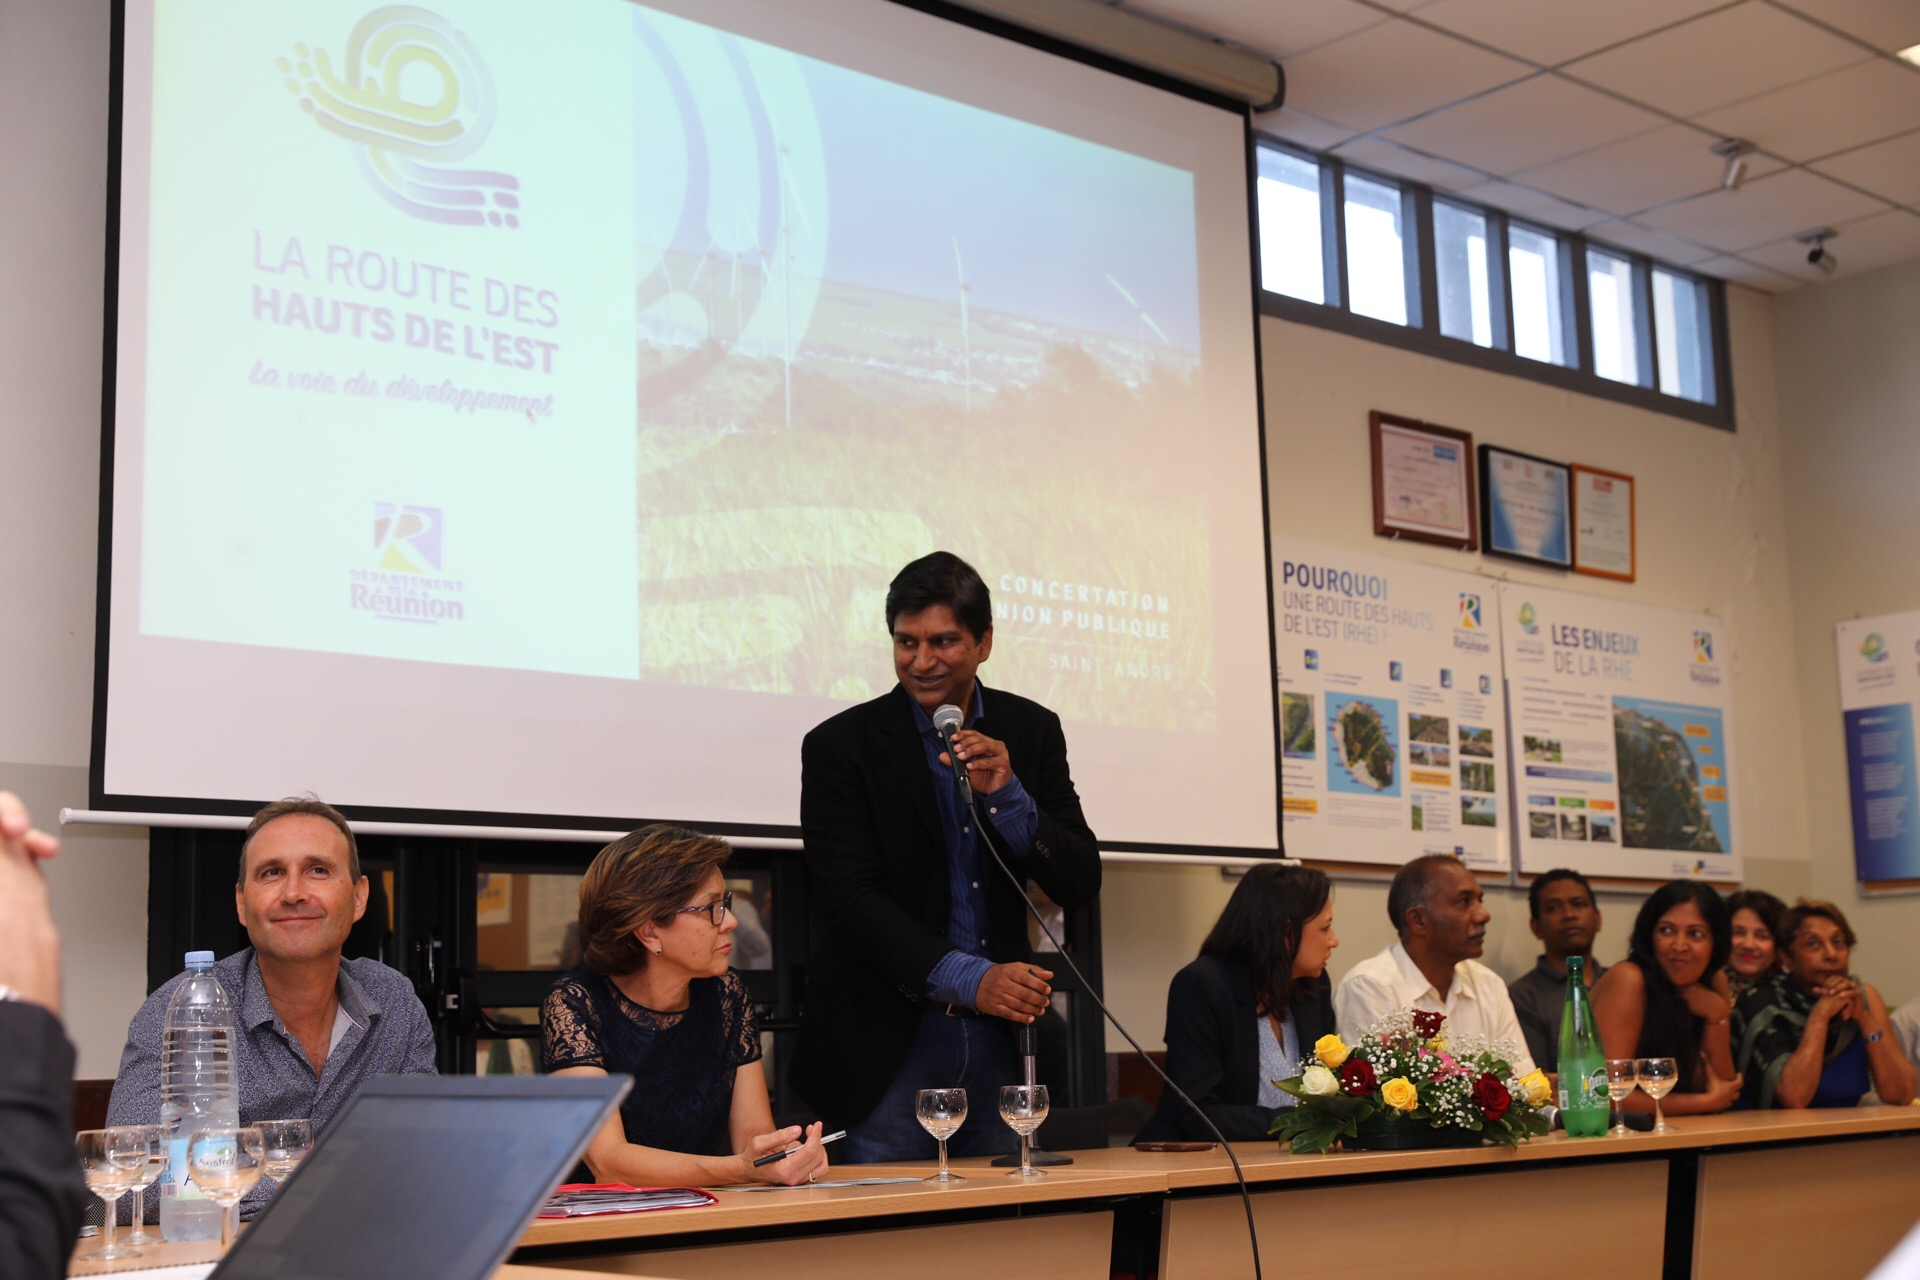 Infrastructures à La Réunion: La première consultation publique pour la Route des hauts de l&rsquo;Est lancée